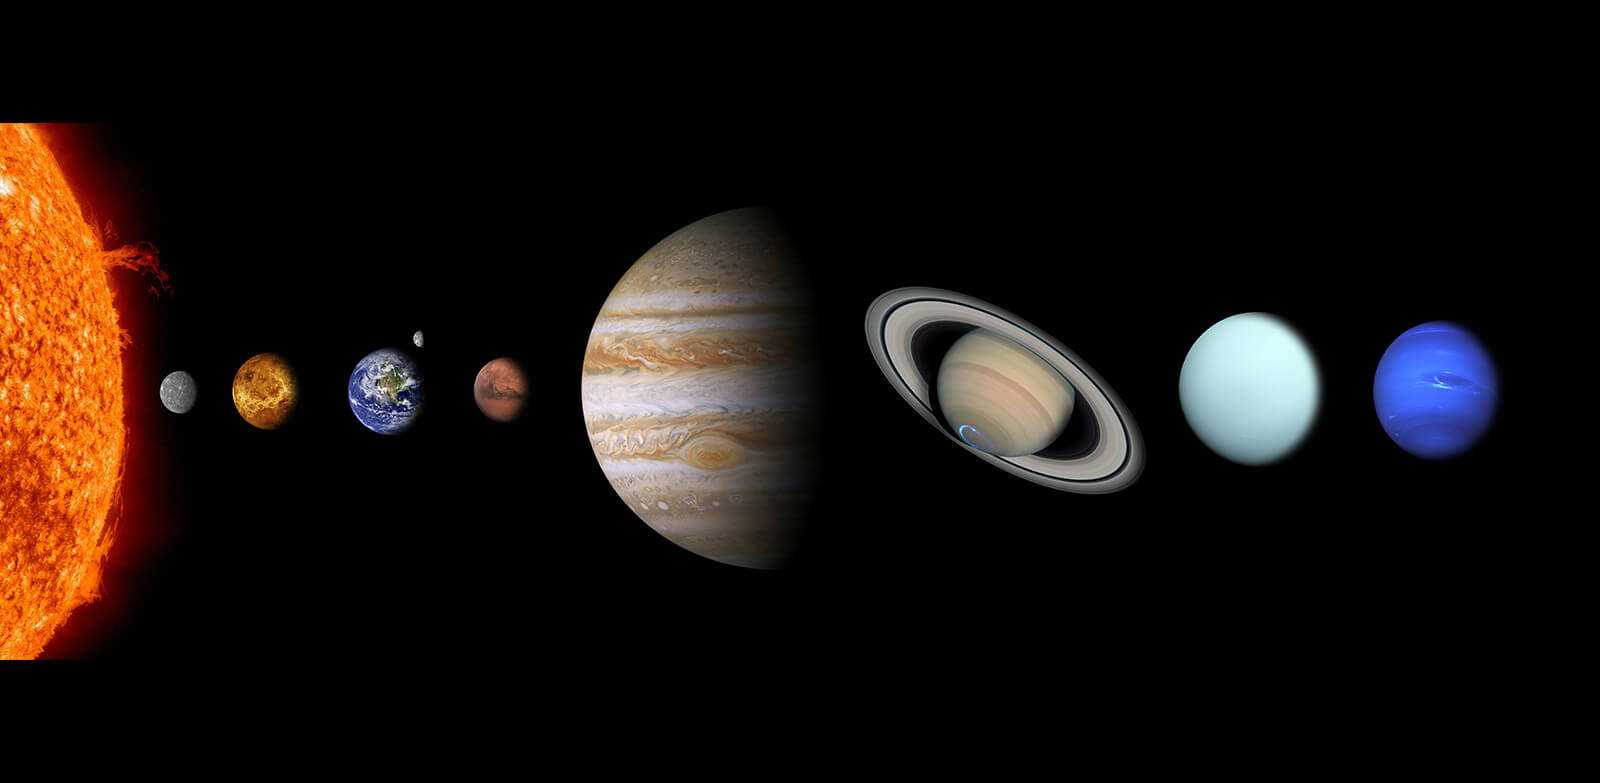 Septyni - tiek kosmoso objektų galima matyti plika akimi: Saulė, Mėnulis, Merkurijus, Venera, Marsas, Jupiteris ir Saturnas.